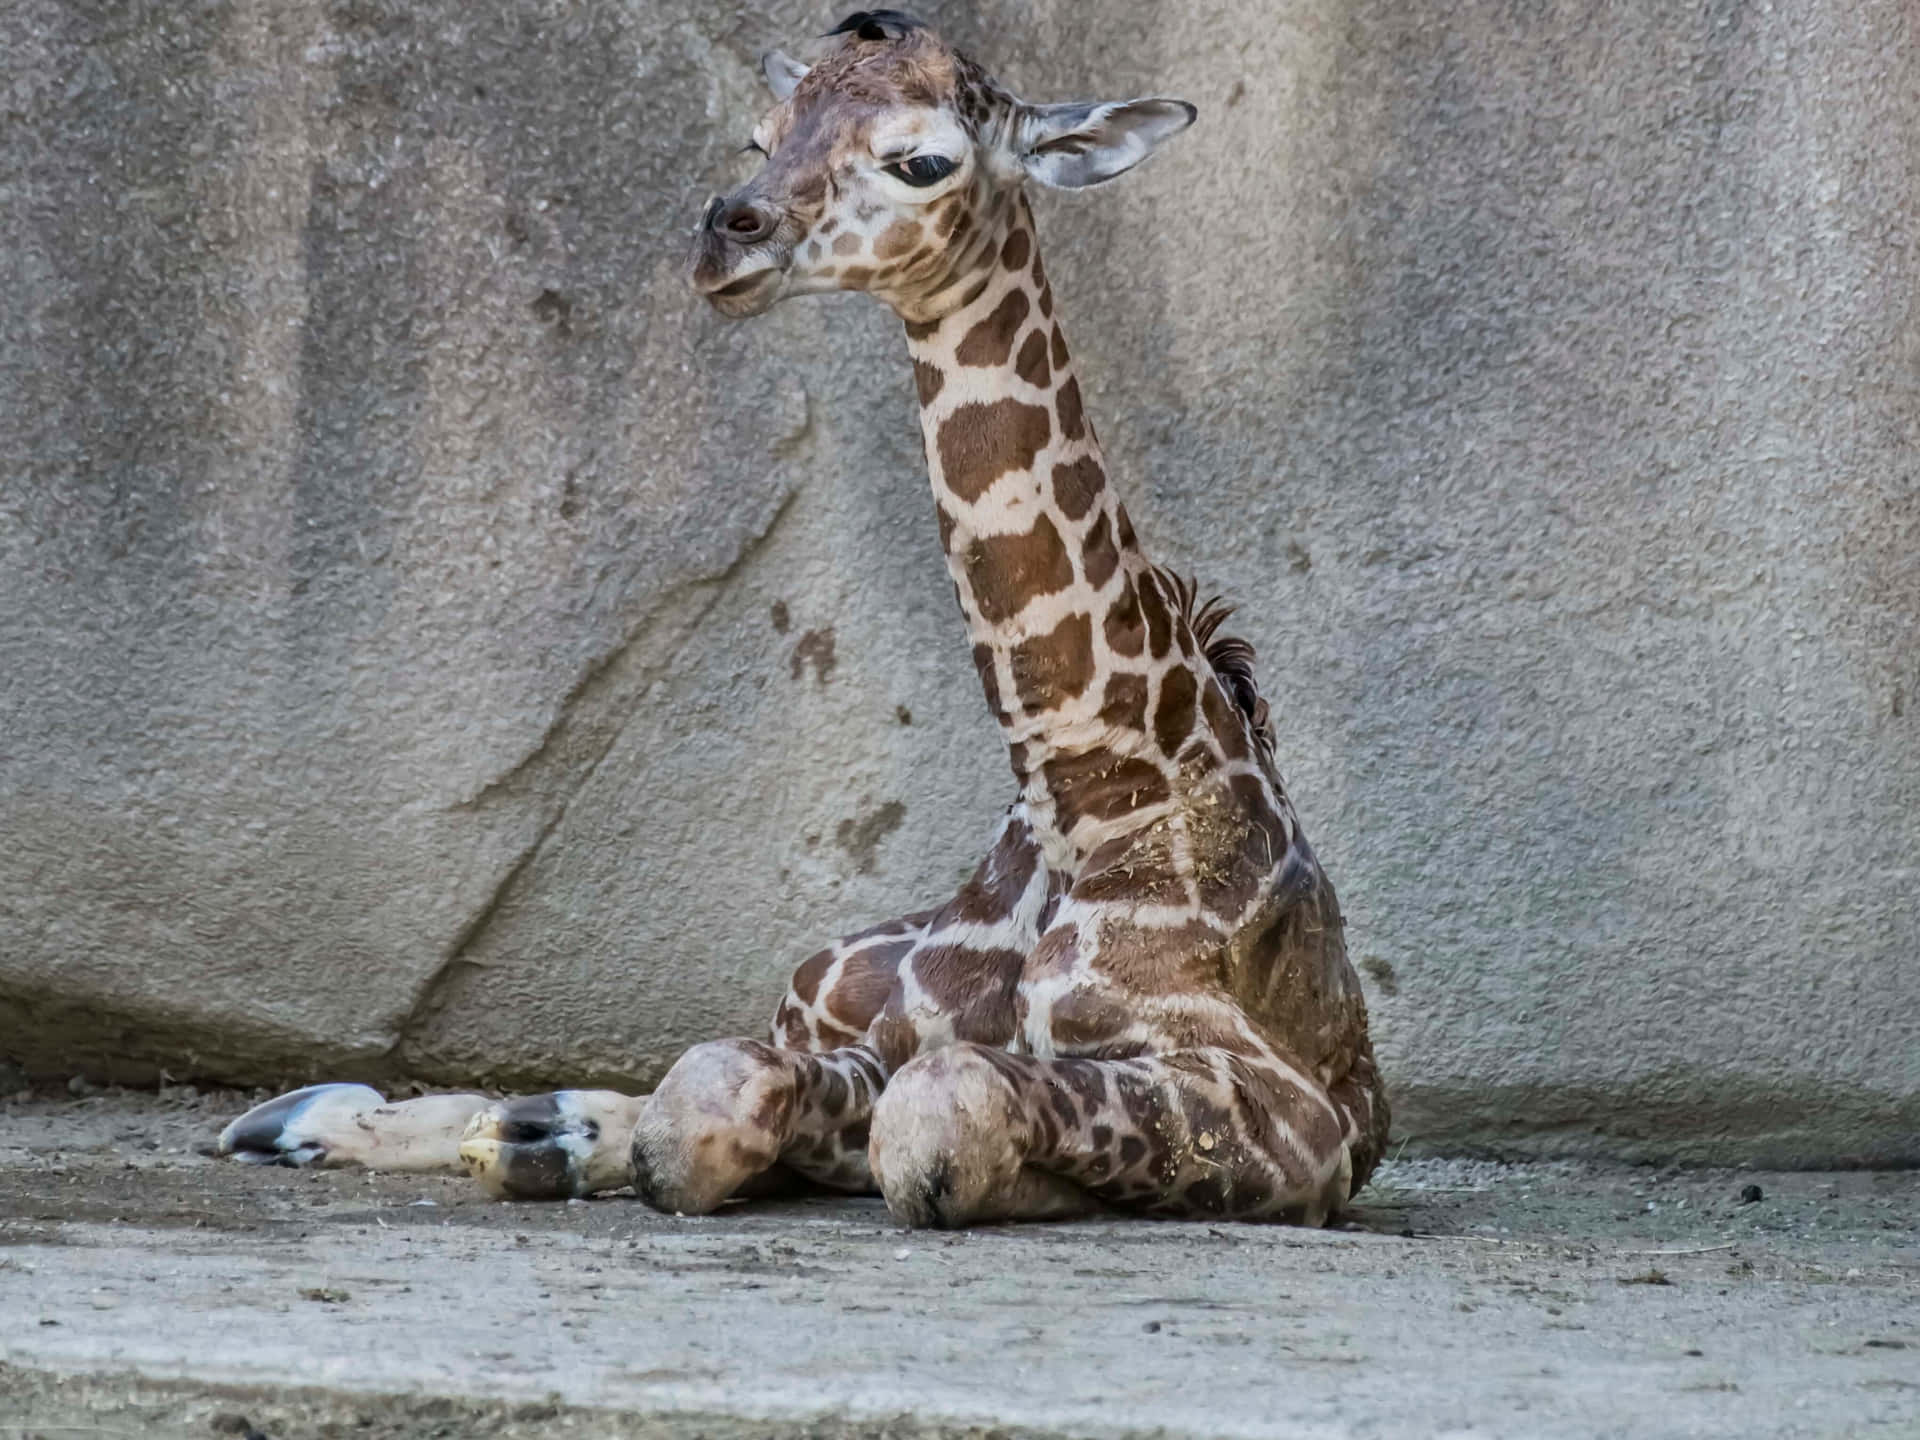 Adorable Baby Giraffe Taking a Nap